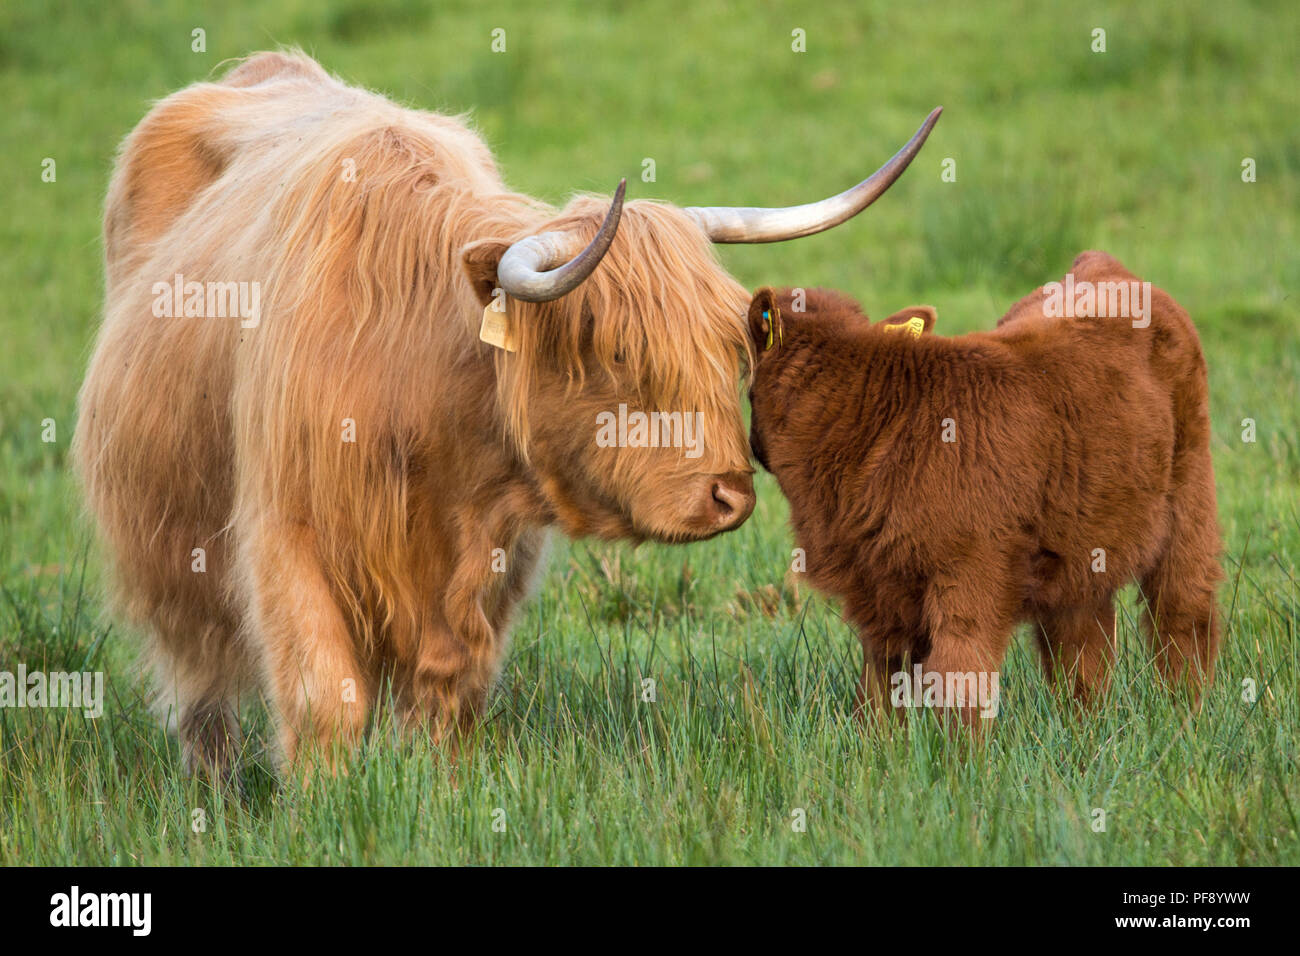 La mère et le veau, vaches Highland, Ecosse, Trossachs, 26 mai 2018 Banque D'Images